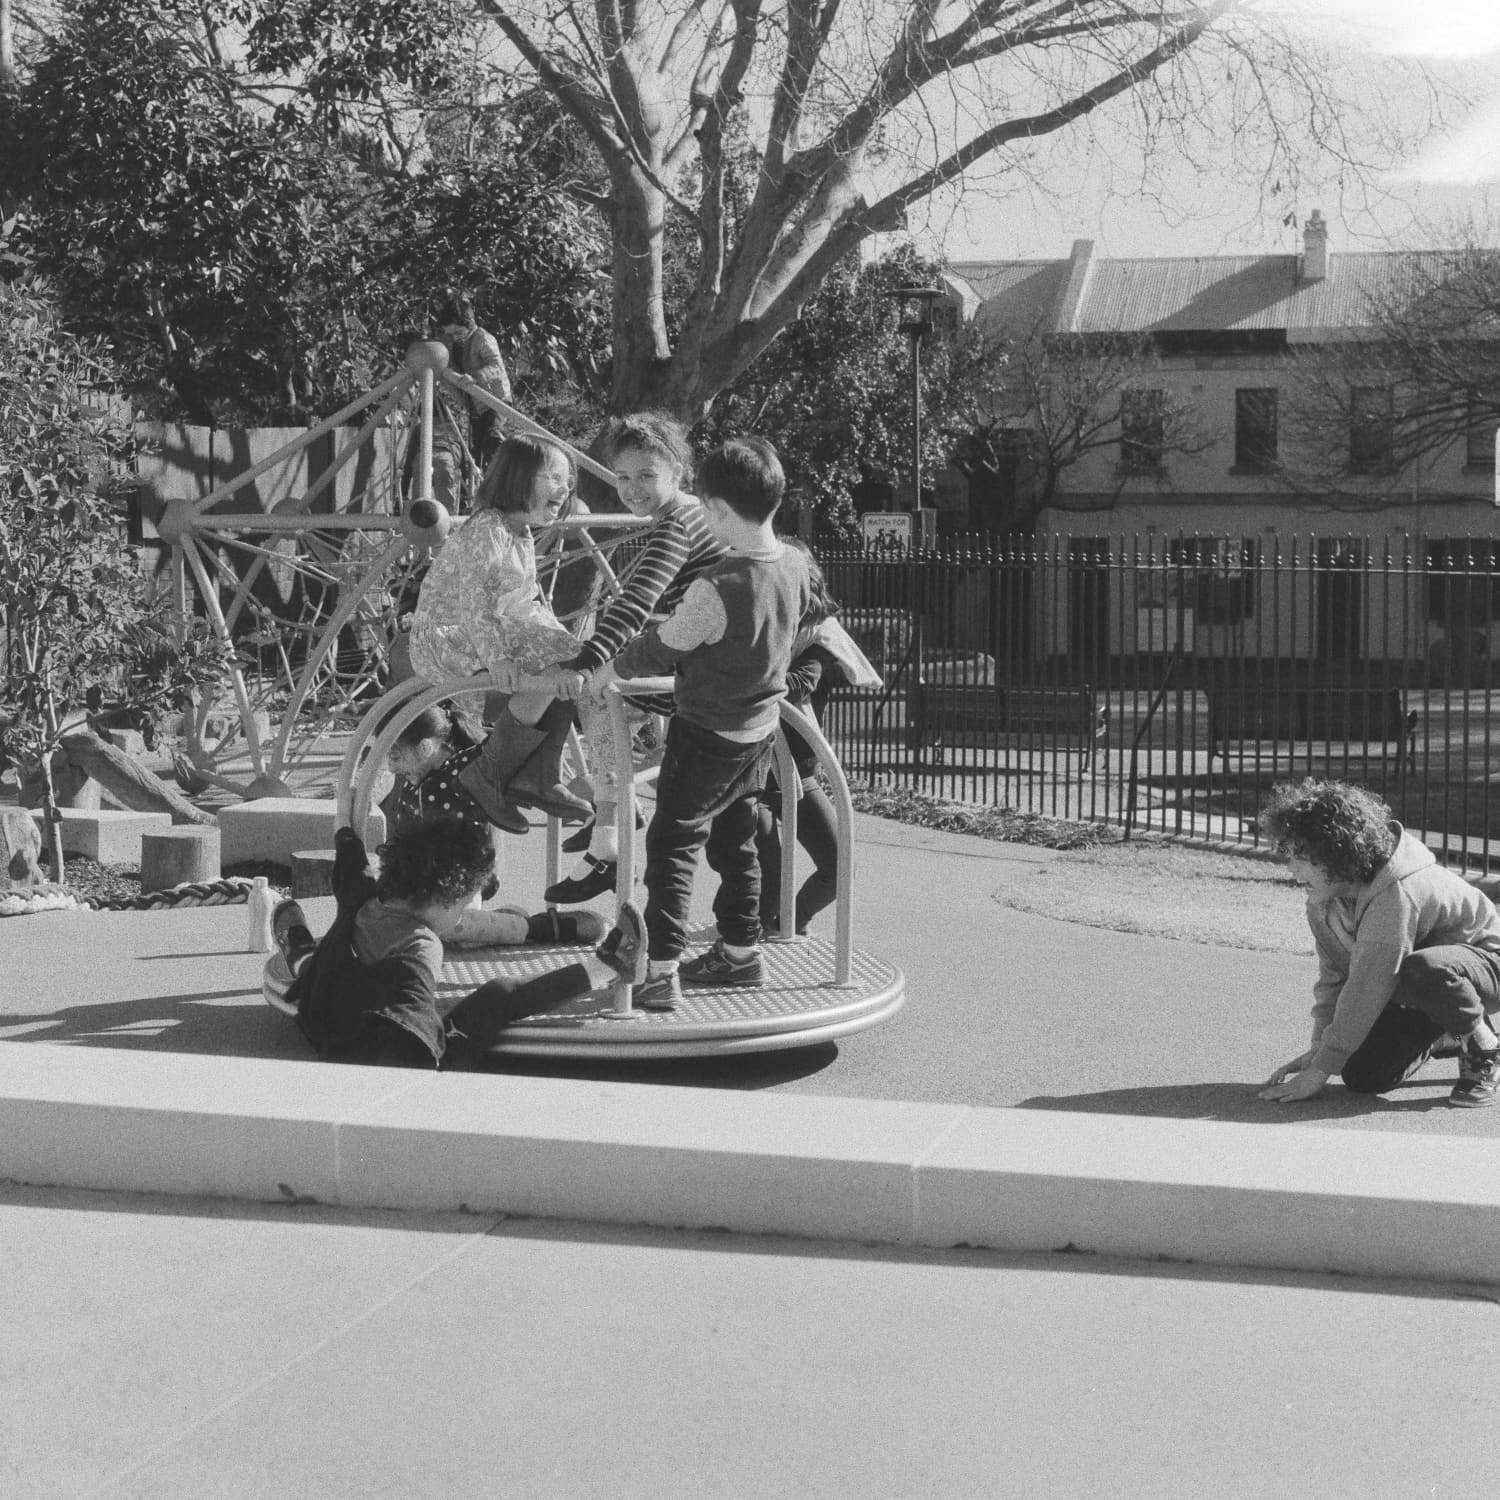 Children on a merry-go-round